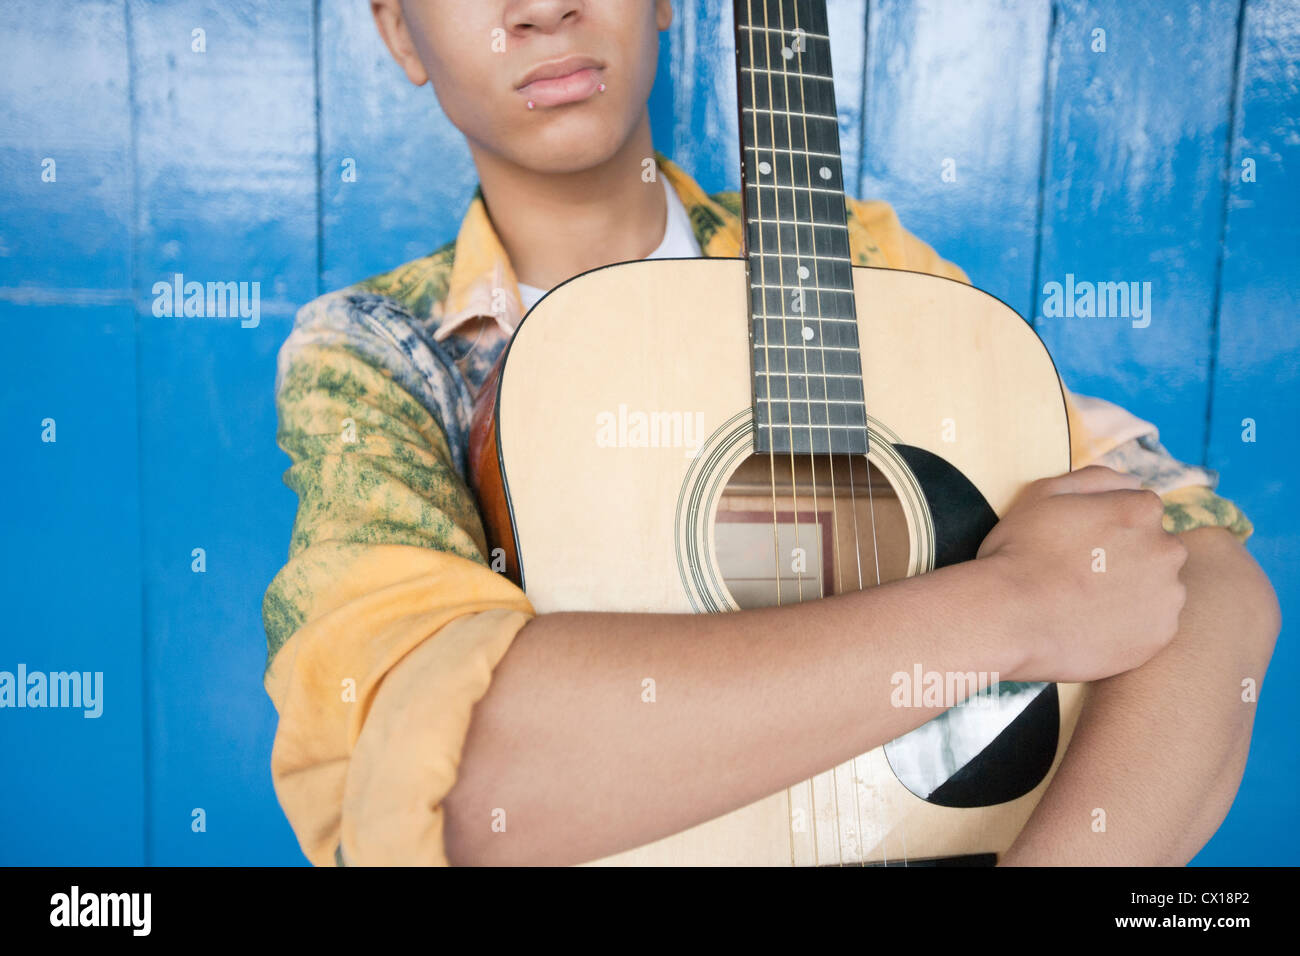 Mid section of a Teenage boy avec guitare contre des lambris Banque D'Images